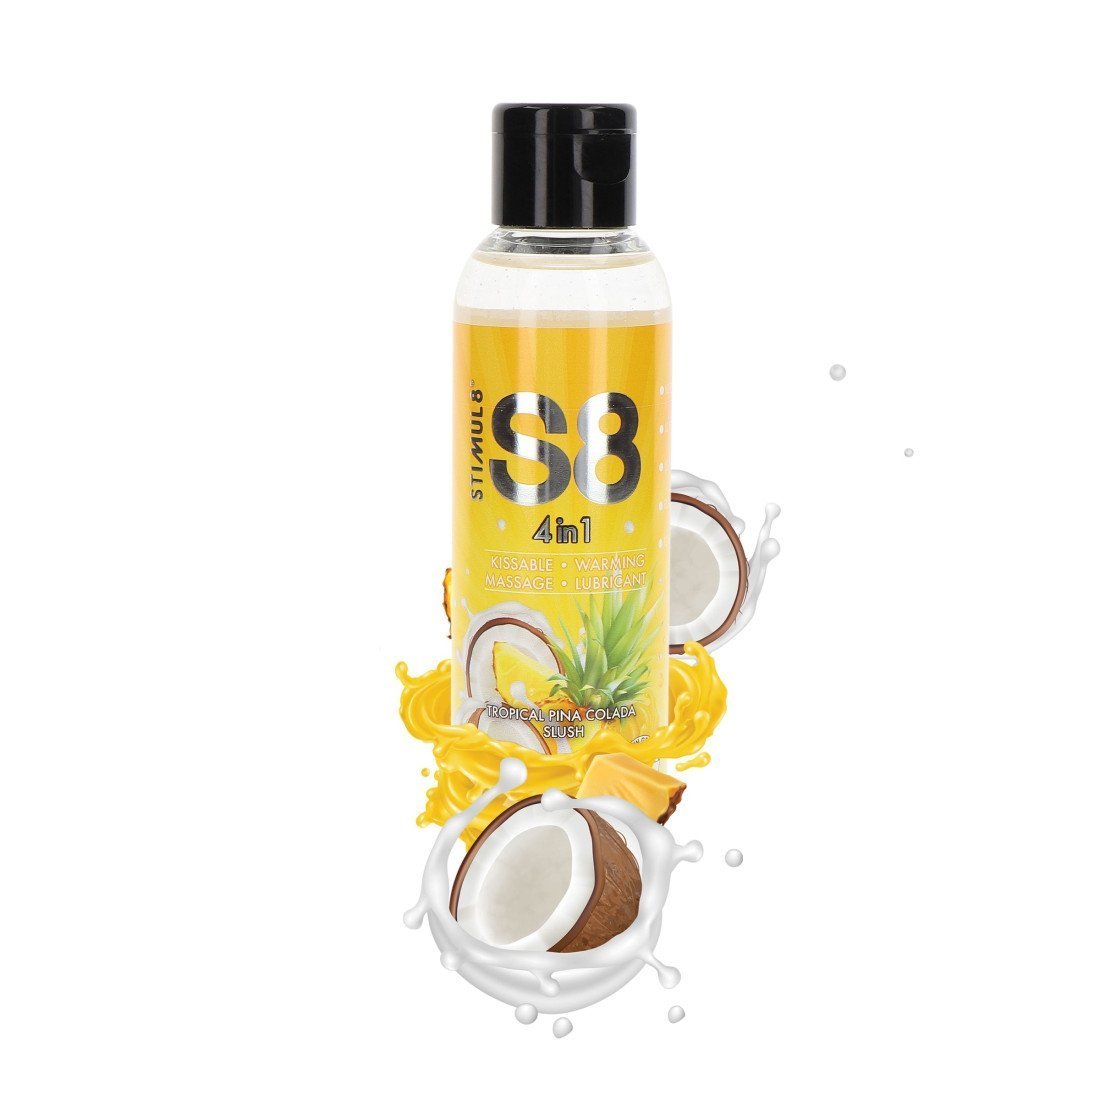 Šildantis masažinis lubrikantas „4 in 1 Tropical Pina Colada Slush“, 125 ml - Stimul8